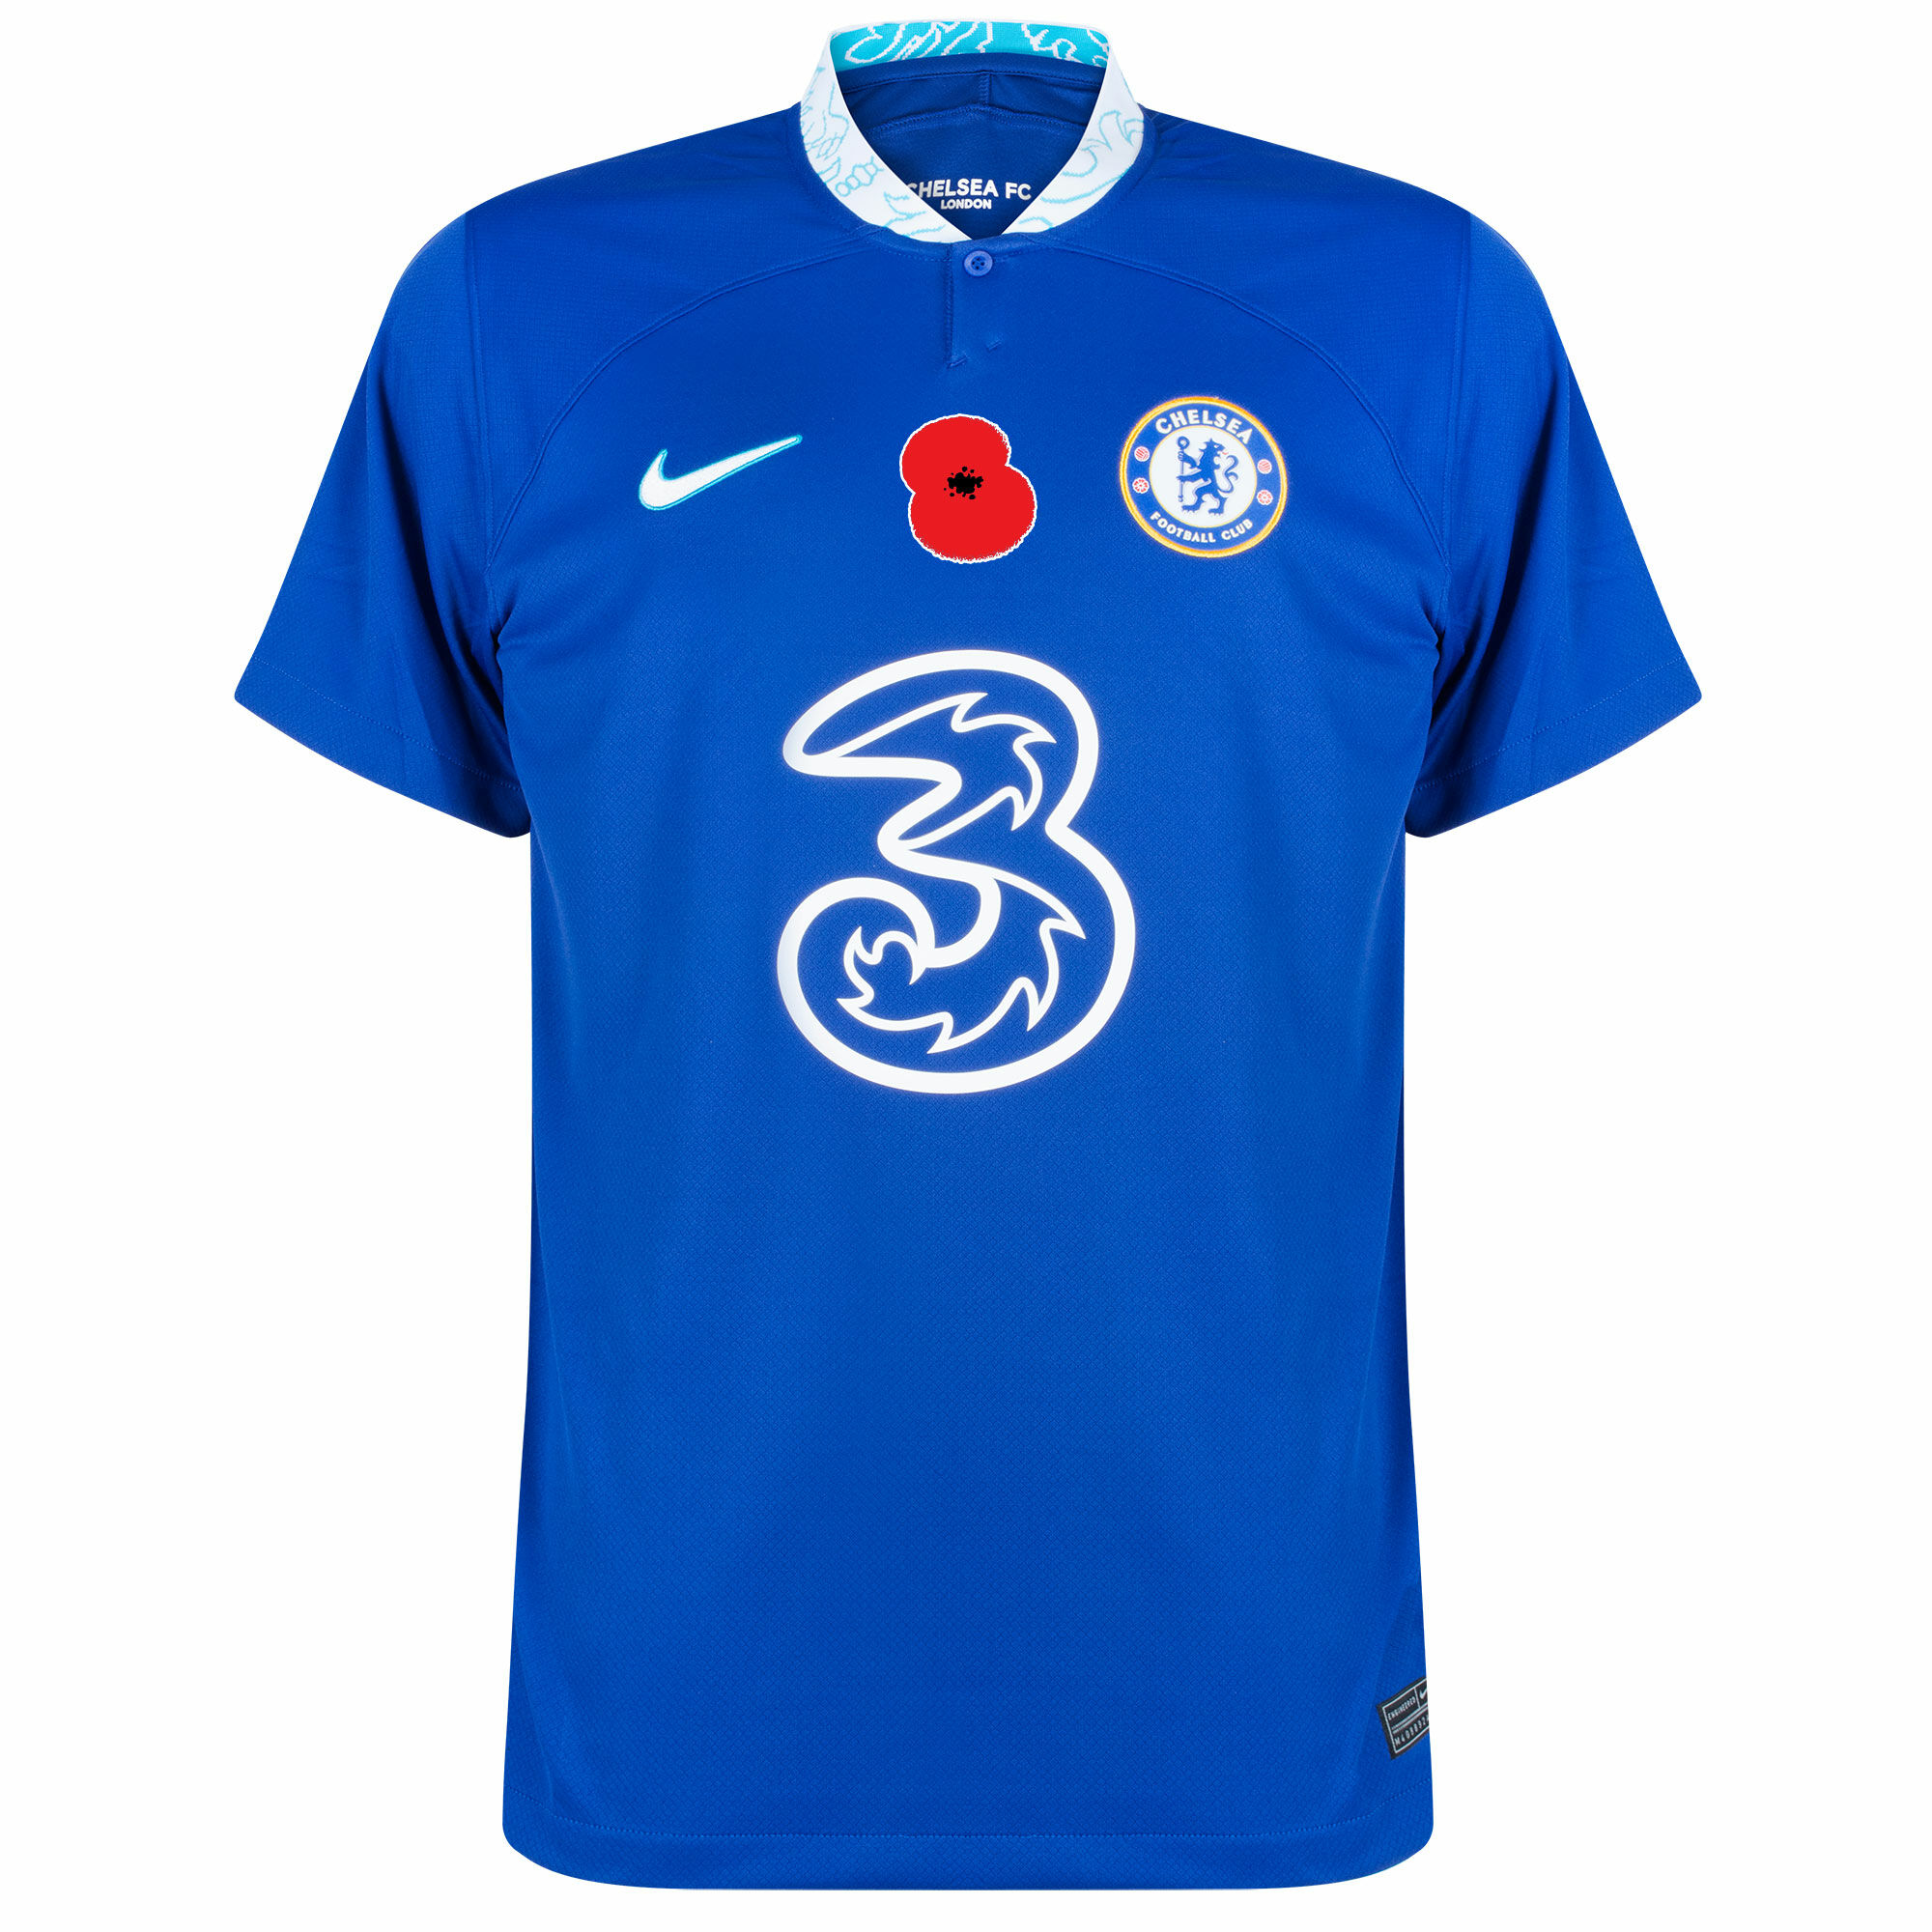 Chelsea - Dres fotbalový - logo British Legion Poppy, domácí, sezóna 2022/23, modrý